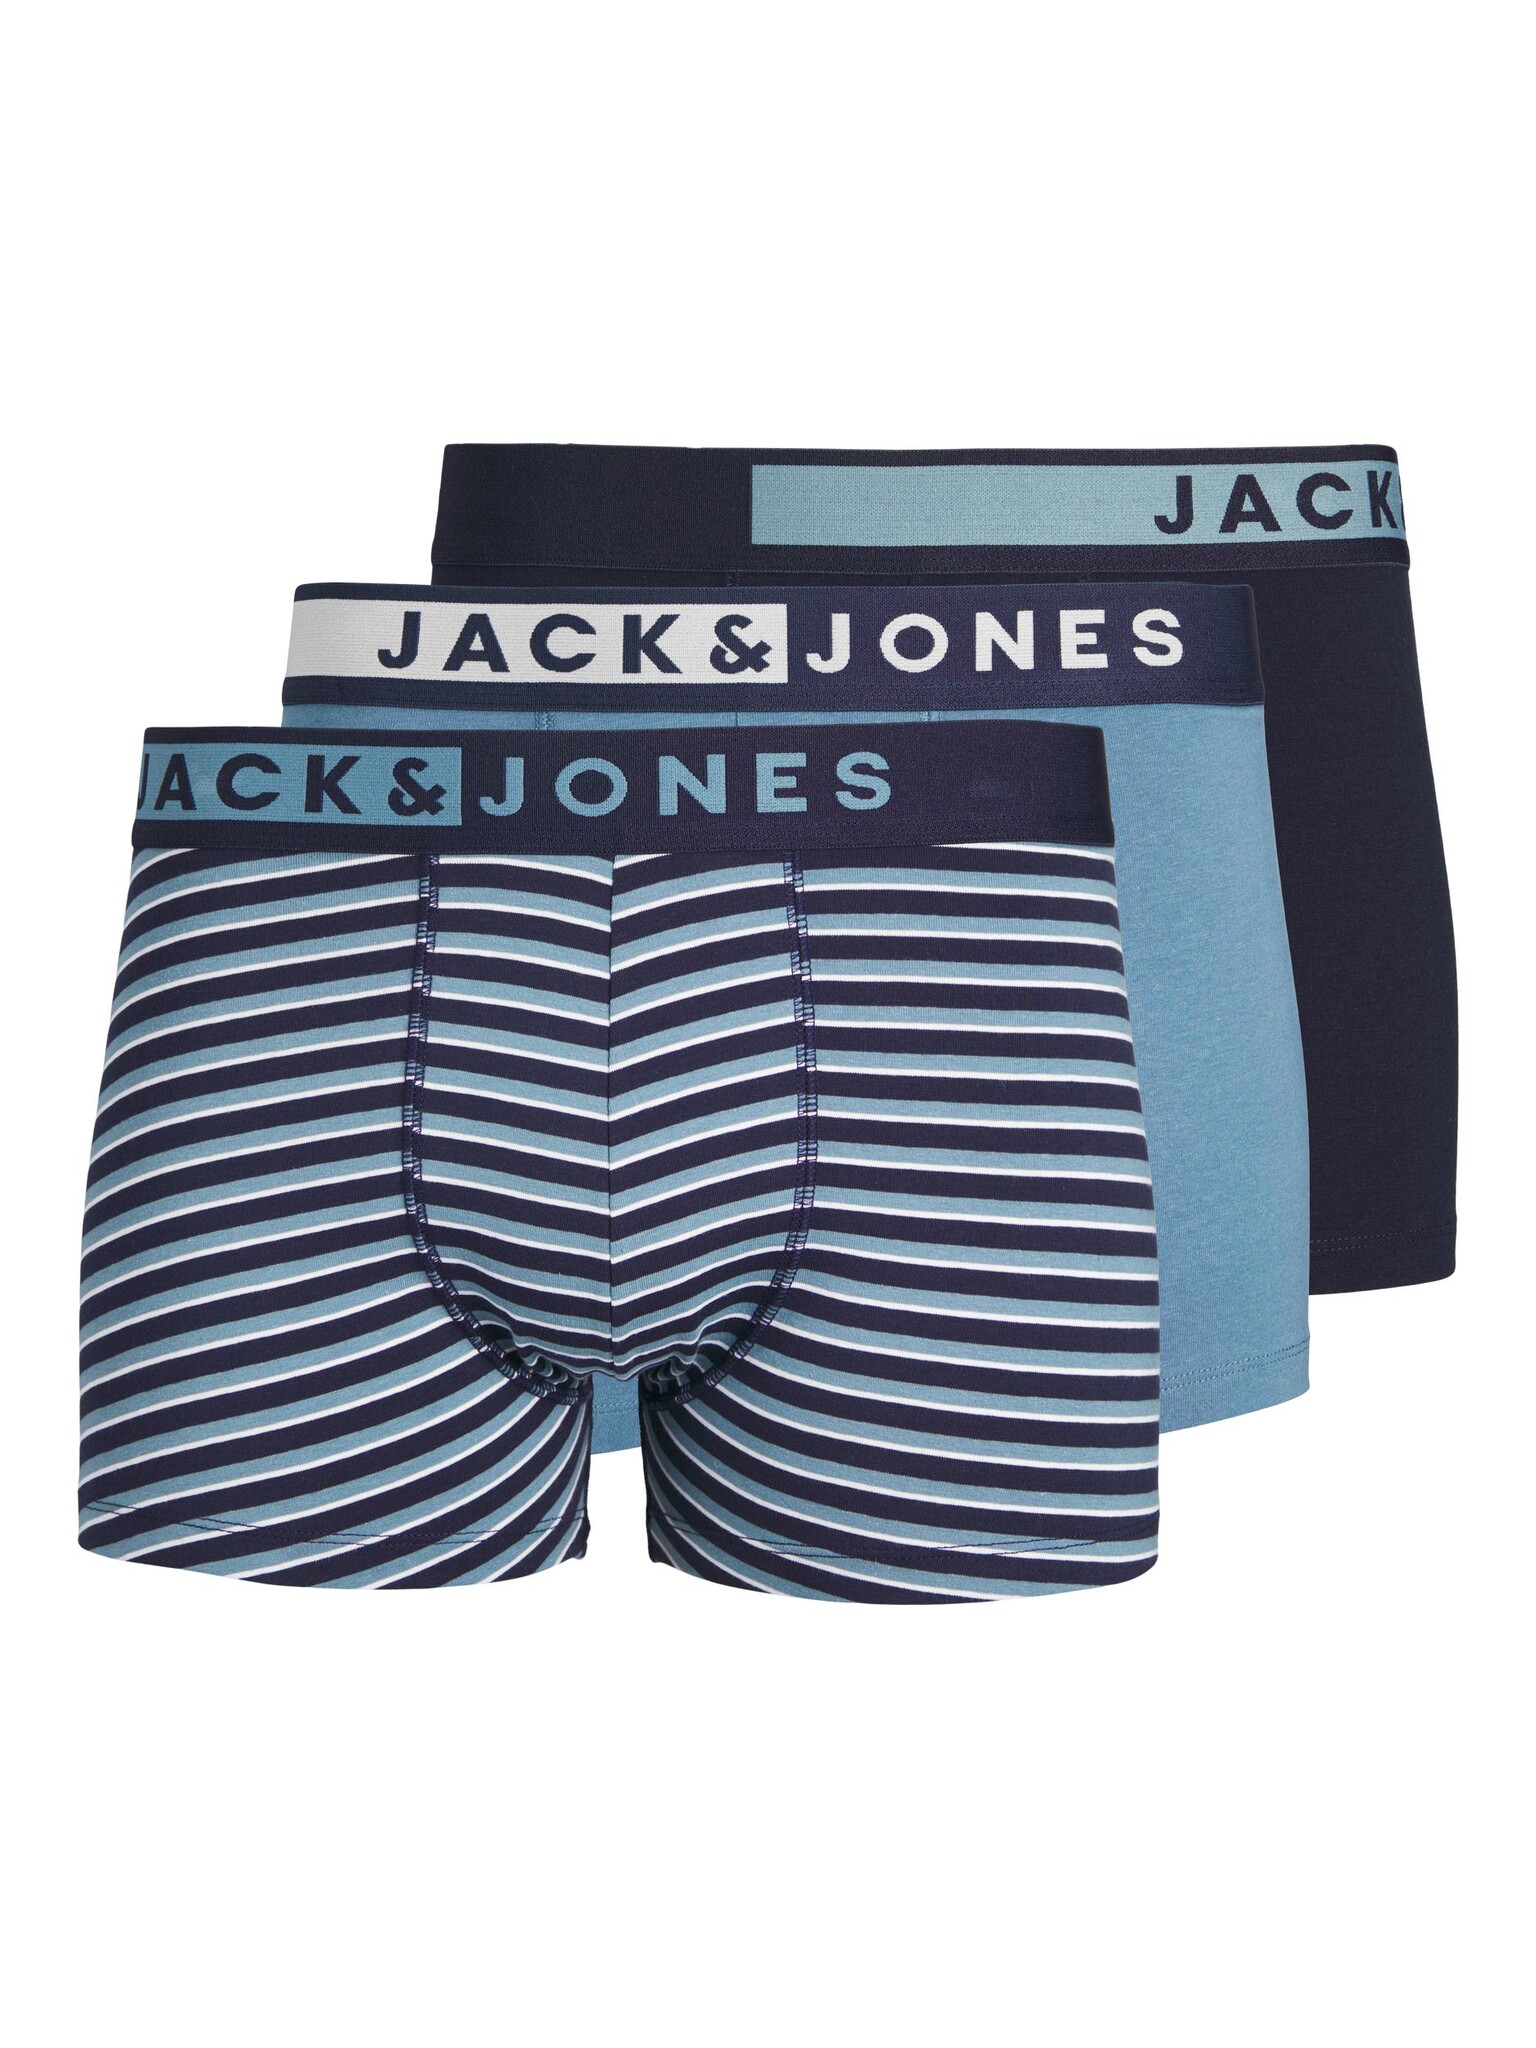 Jack Jones Jack Jones Boxershorts Heren Trunks JACSTON Blauw 3 Pack